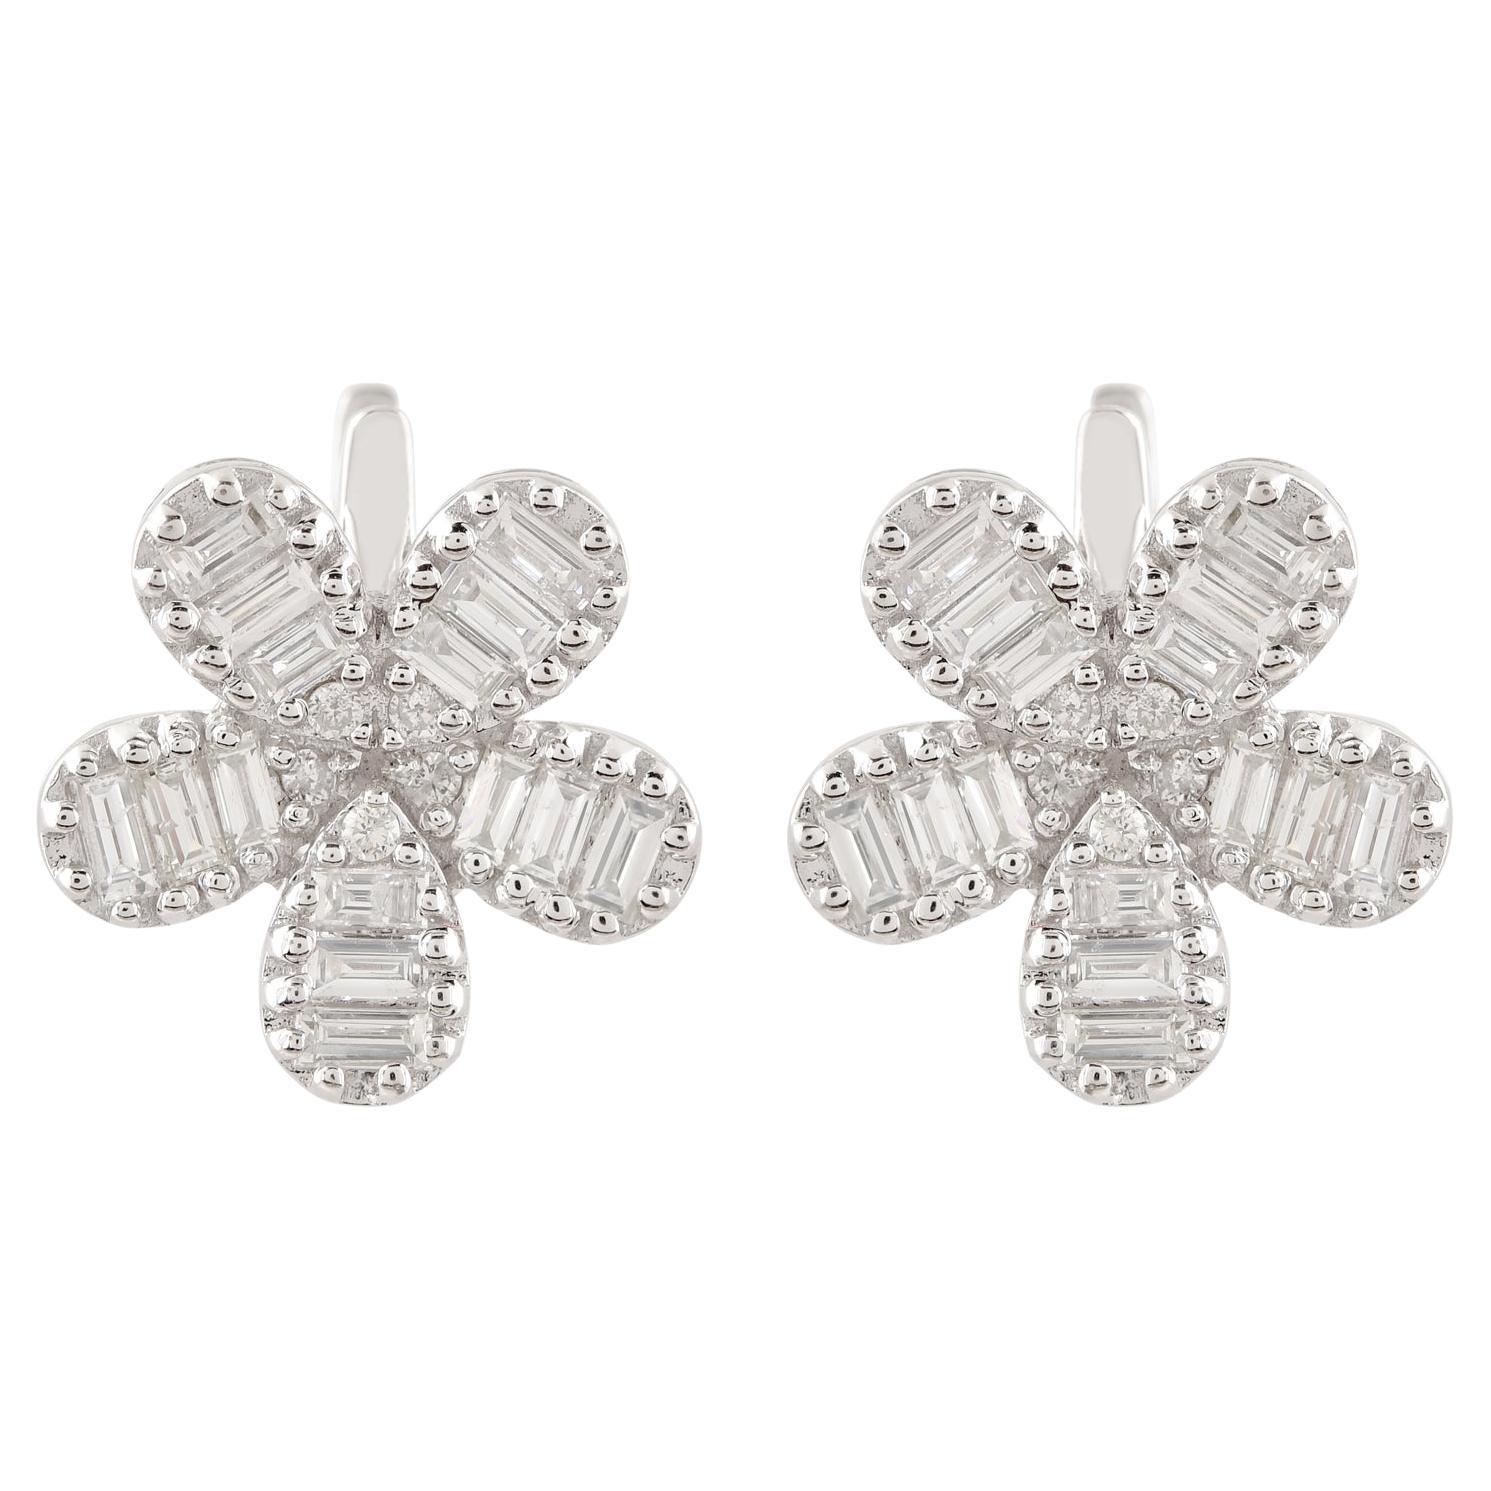 1.01 Carat Baguette Diamond Flower Stud Earrings Solid 14k White Gold Jewelry